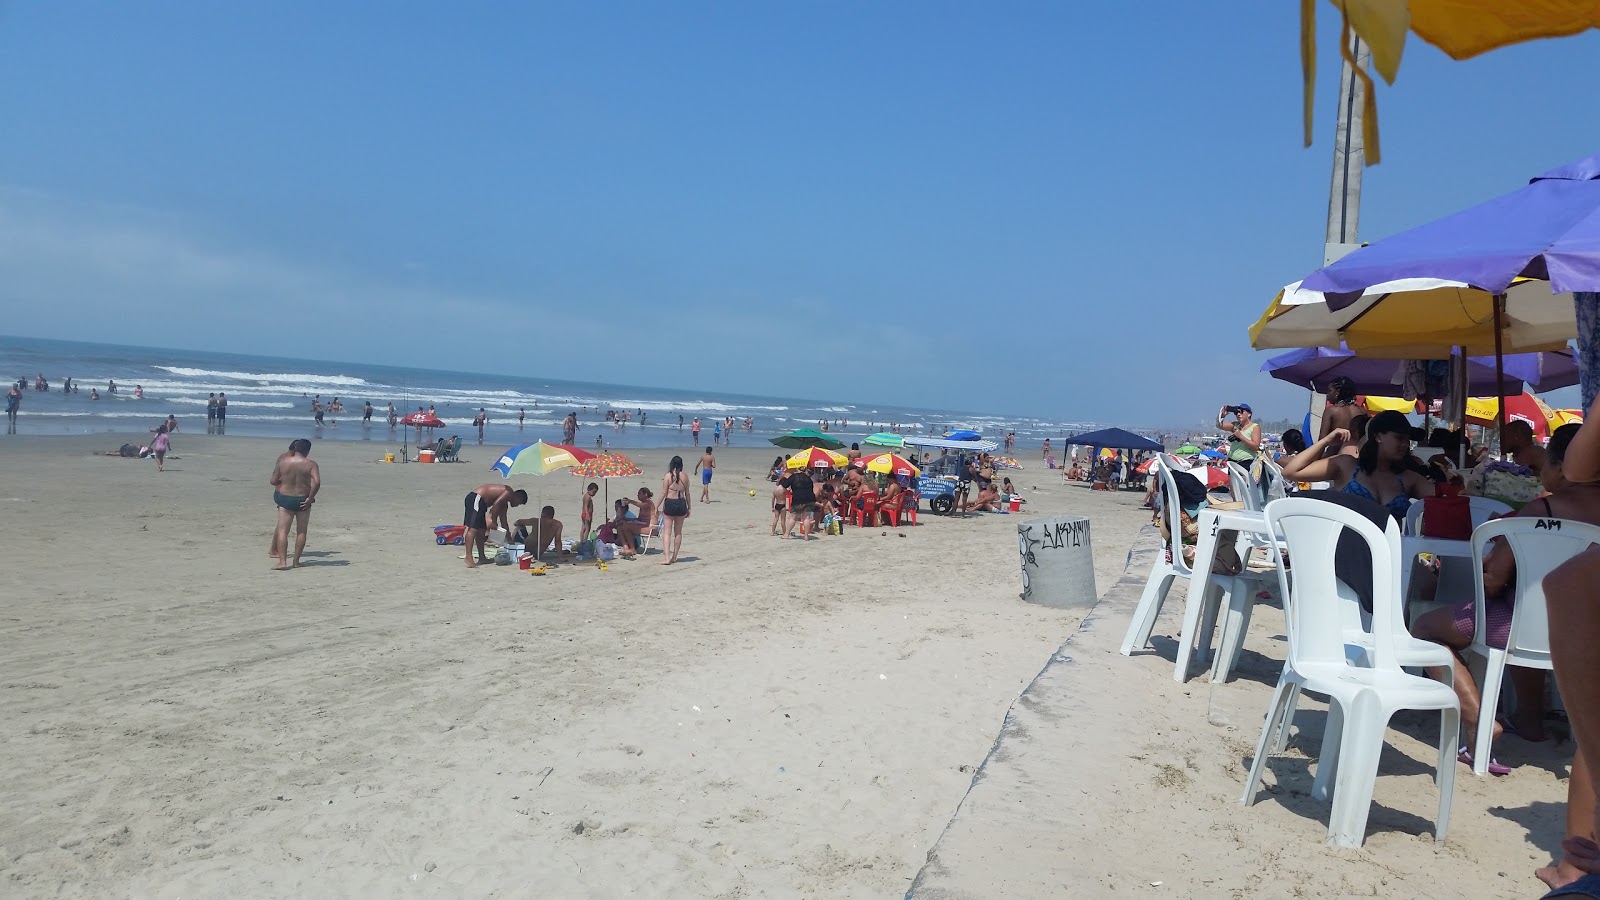 Agenor de Campos Plajı'in fotoğrafı çok temiz temizlik seviyesi ile